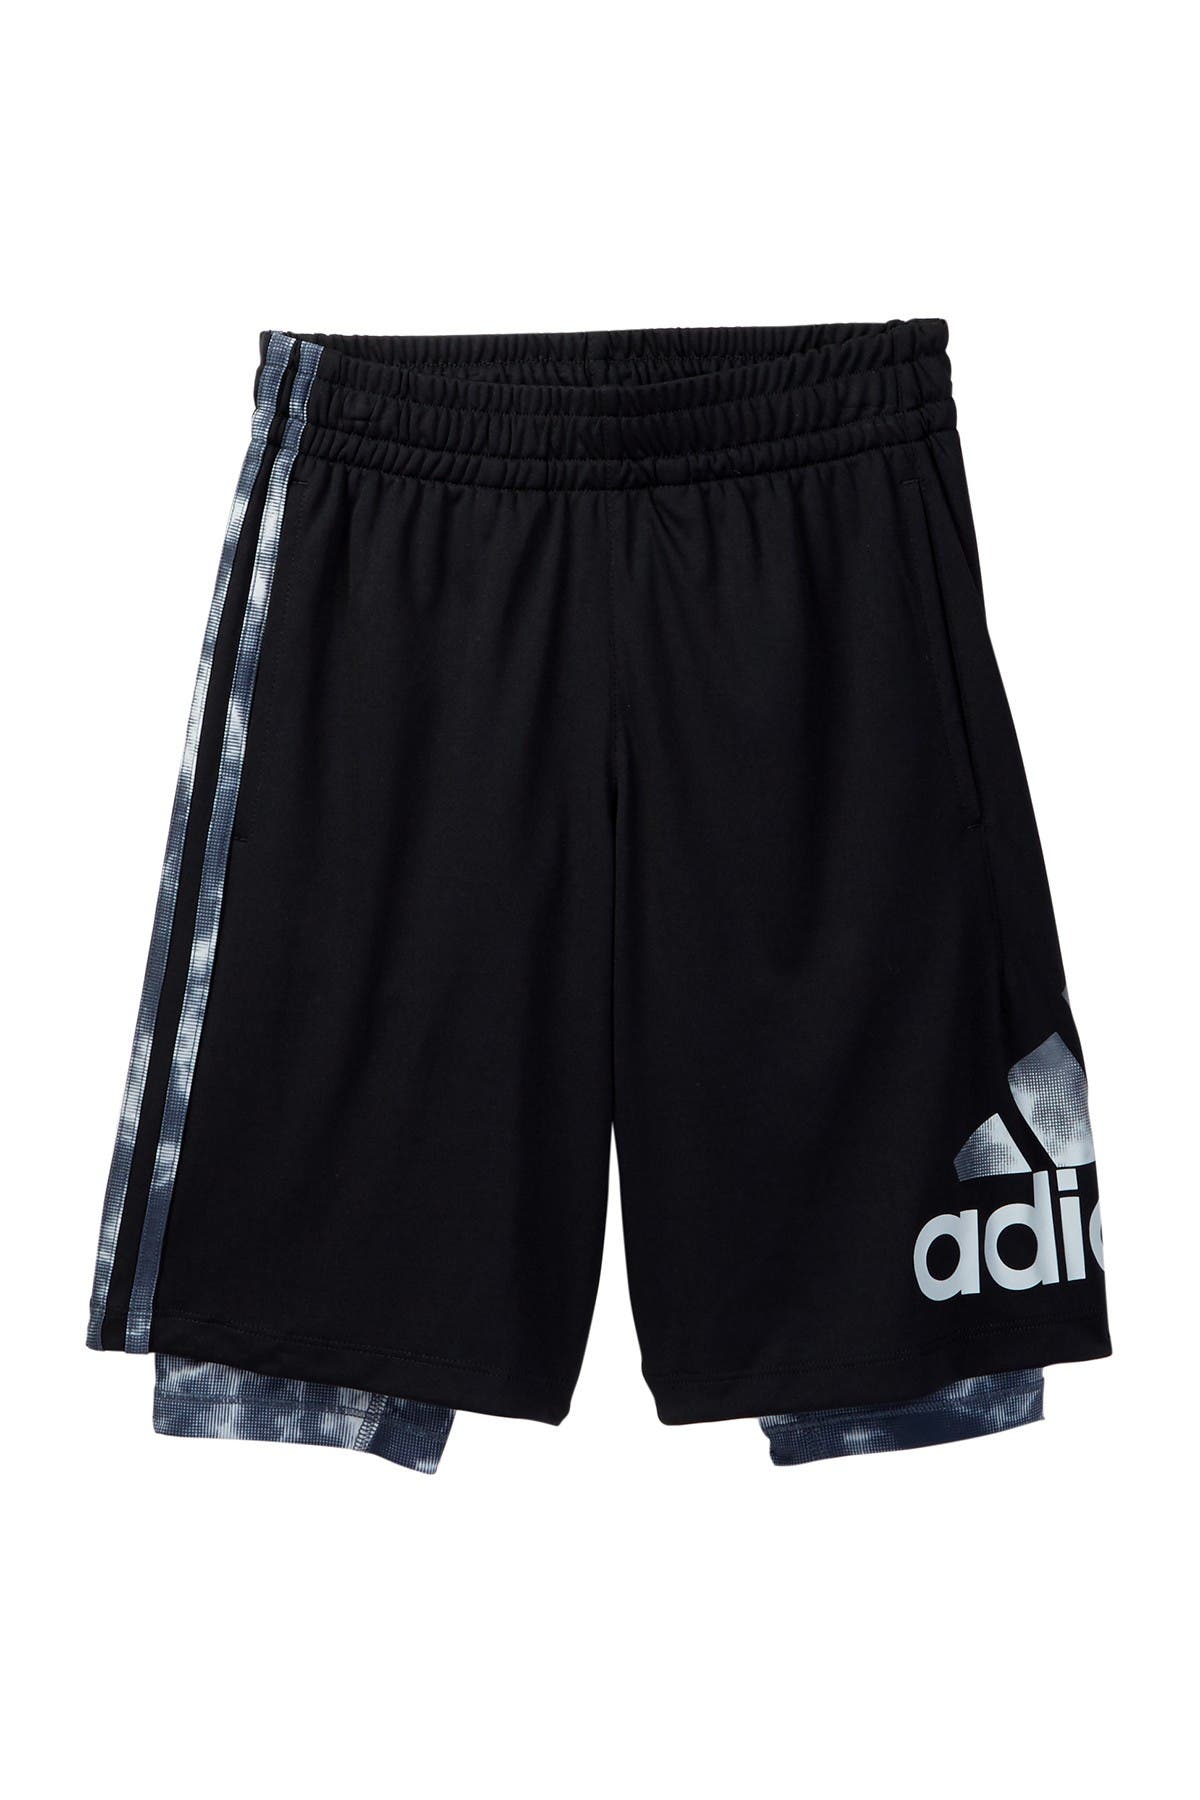 adidas base layer shorts